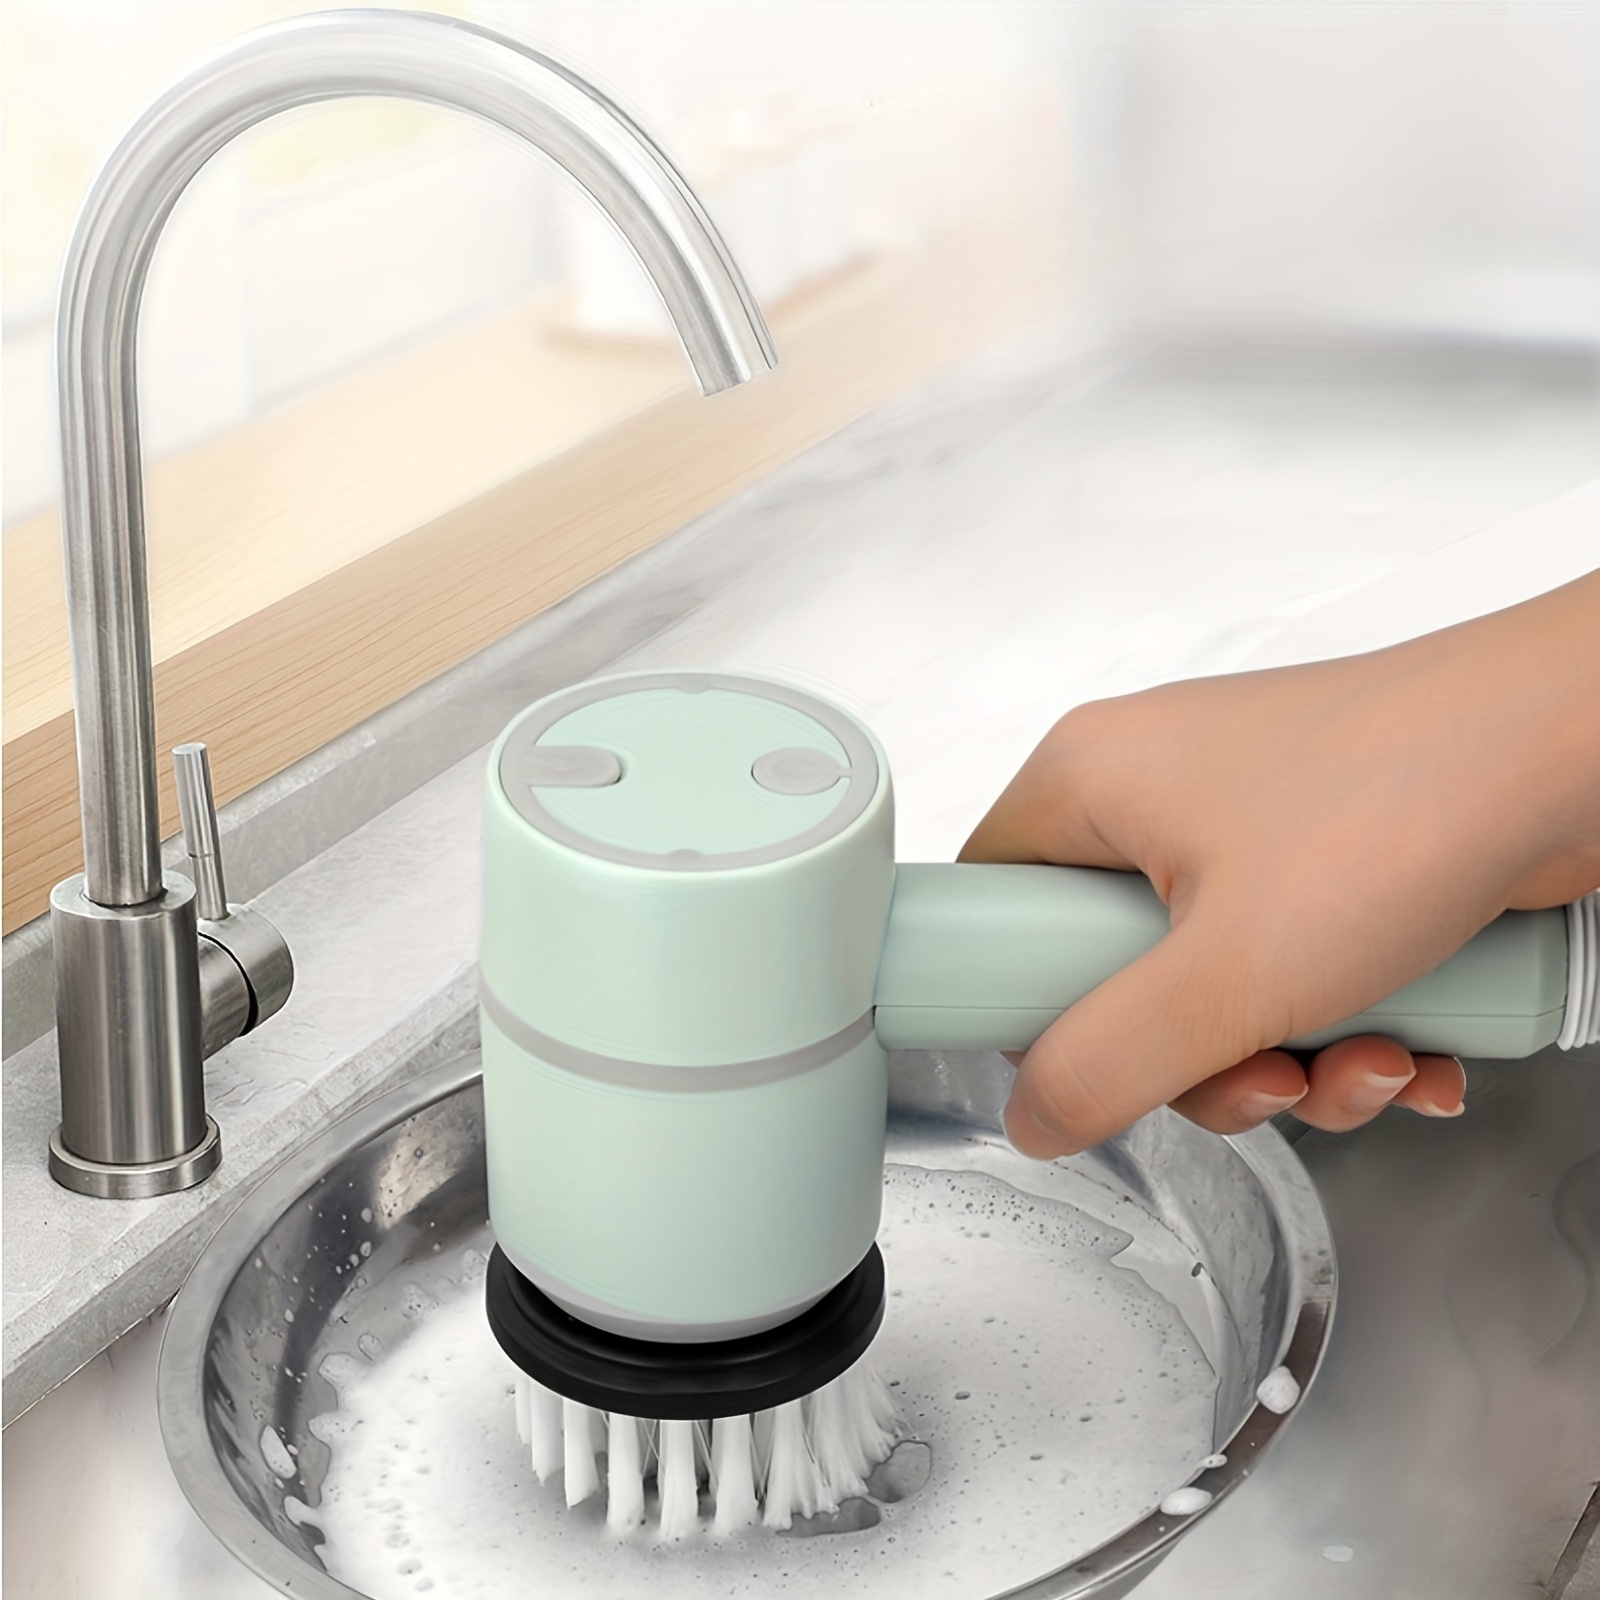 Cleaning Brush Kitchen Household Dishwashing Liquid Brush - Temu